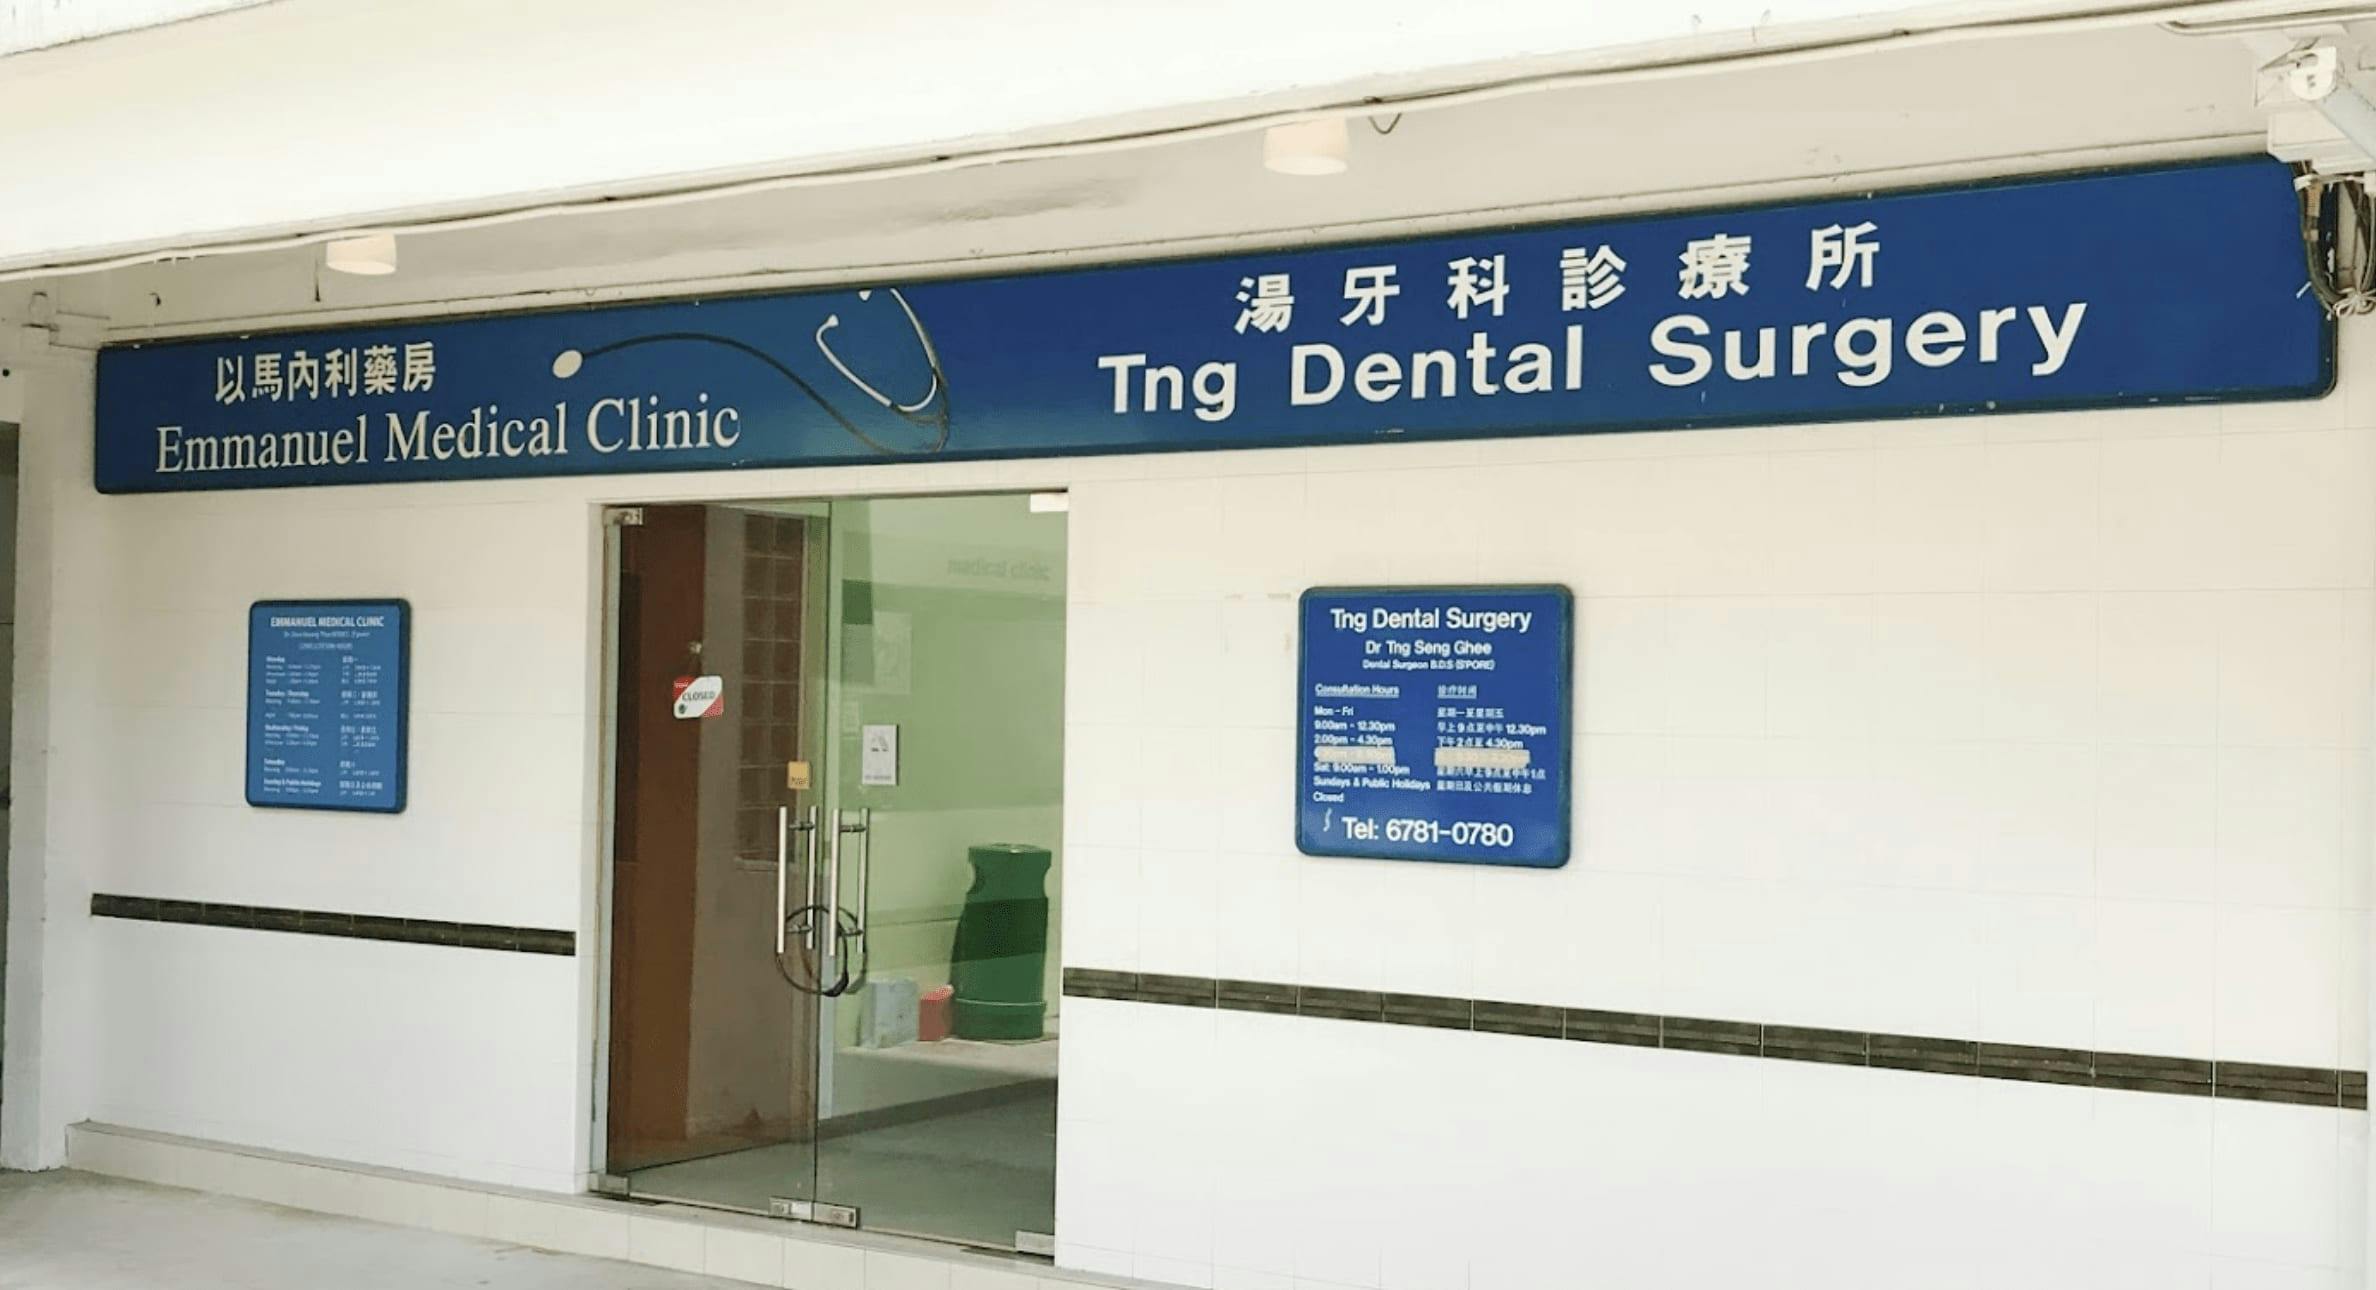 Tng Dental Surgery